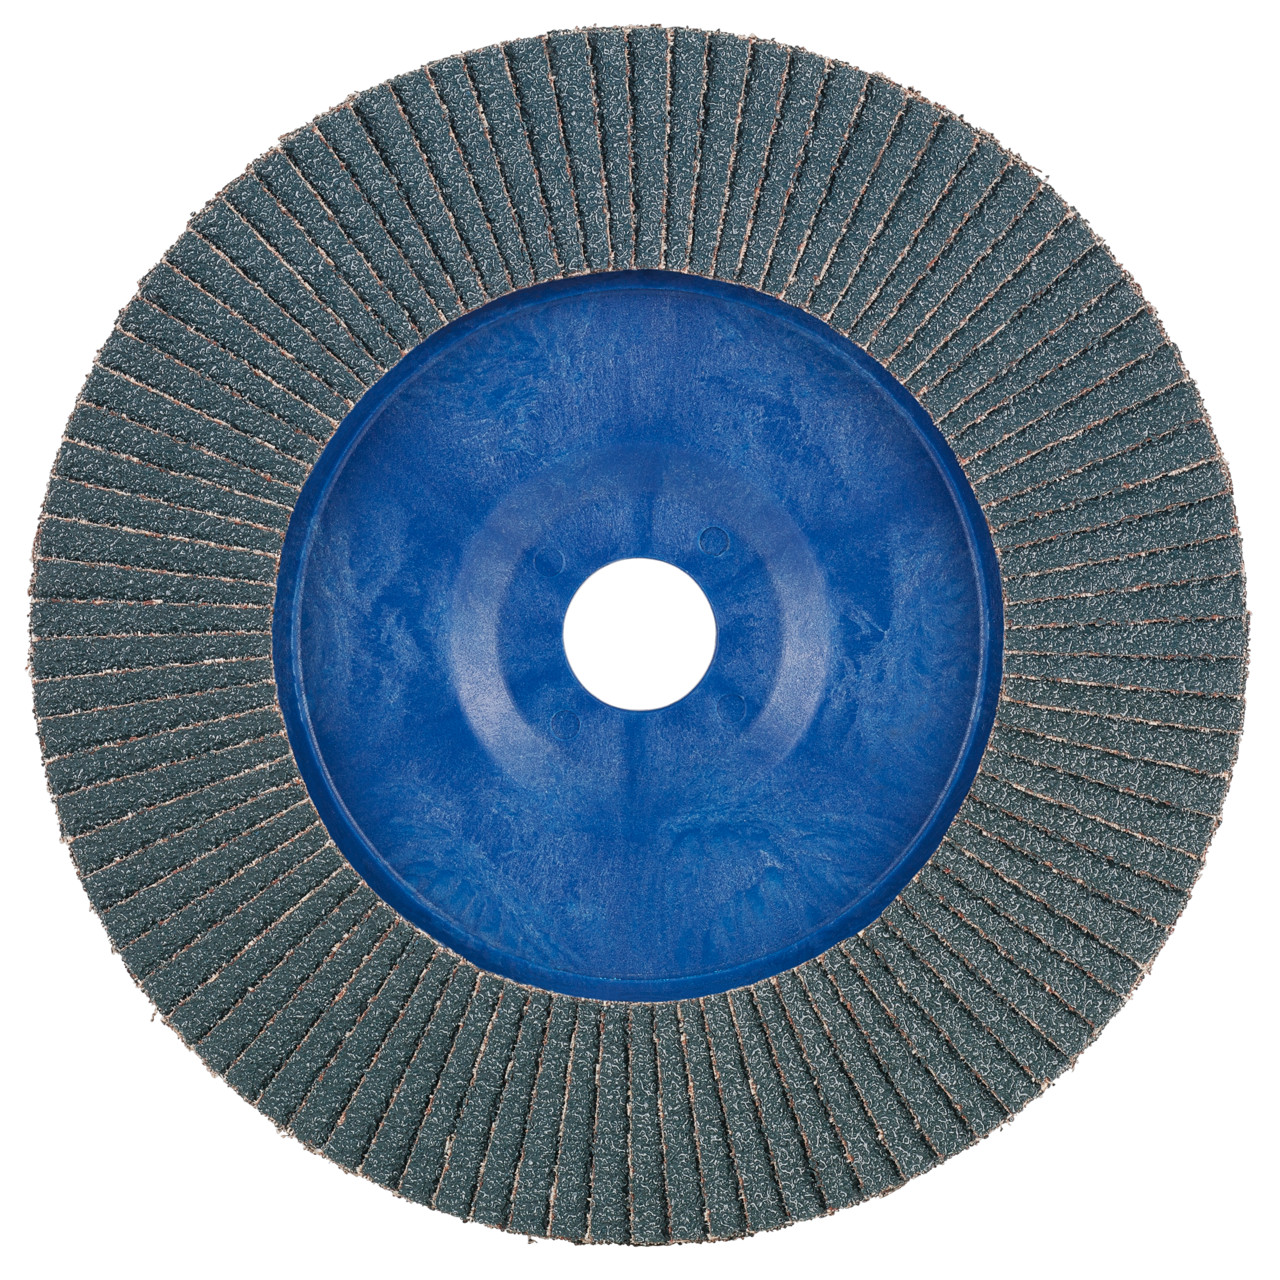 Rondella dentata Tyrolit DxH 115x22.2 2in1 per acciaio e acciaio inox, P80, forma: 28N - versione diritta (corpo portante in plastica), Art. 847927